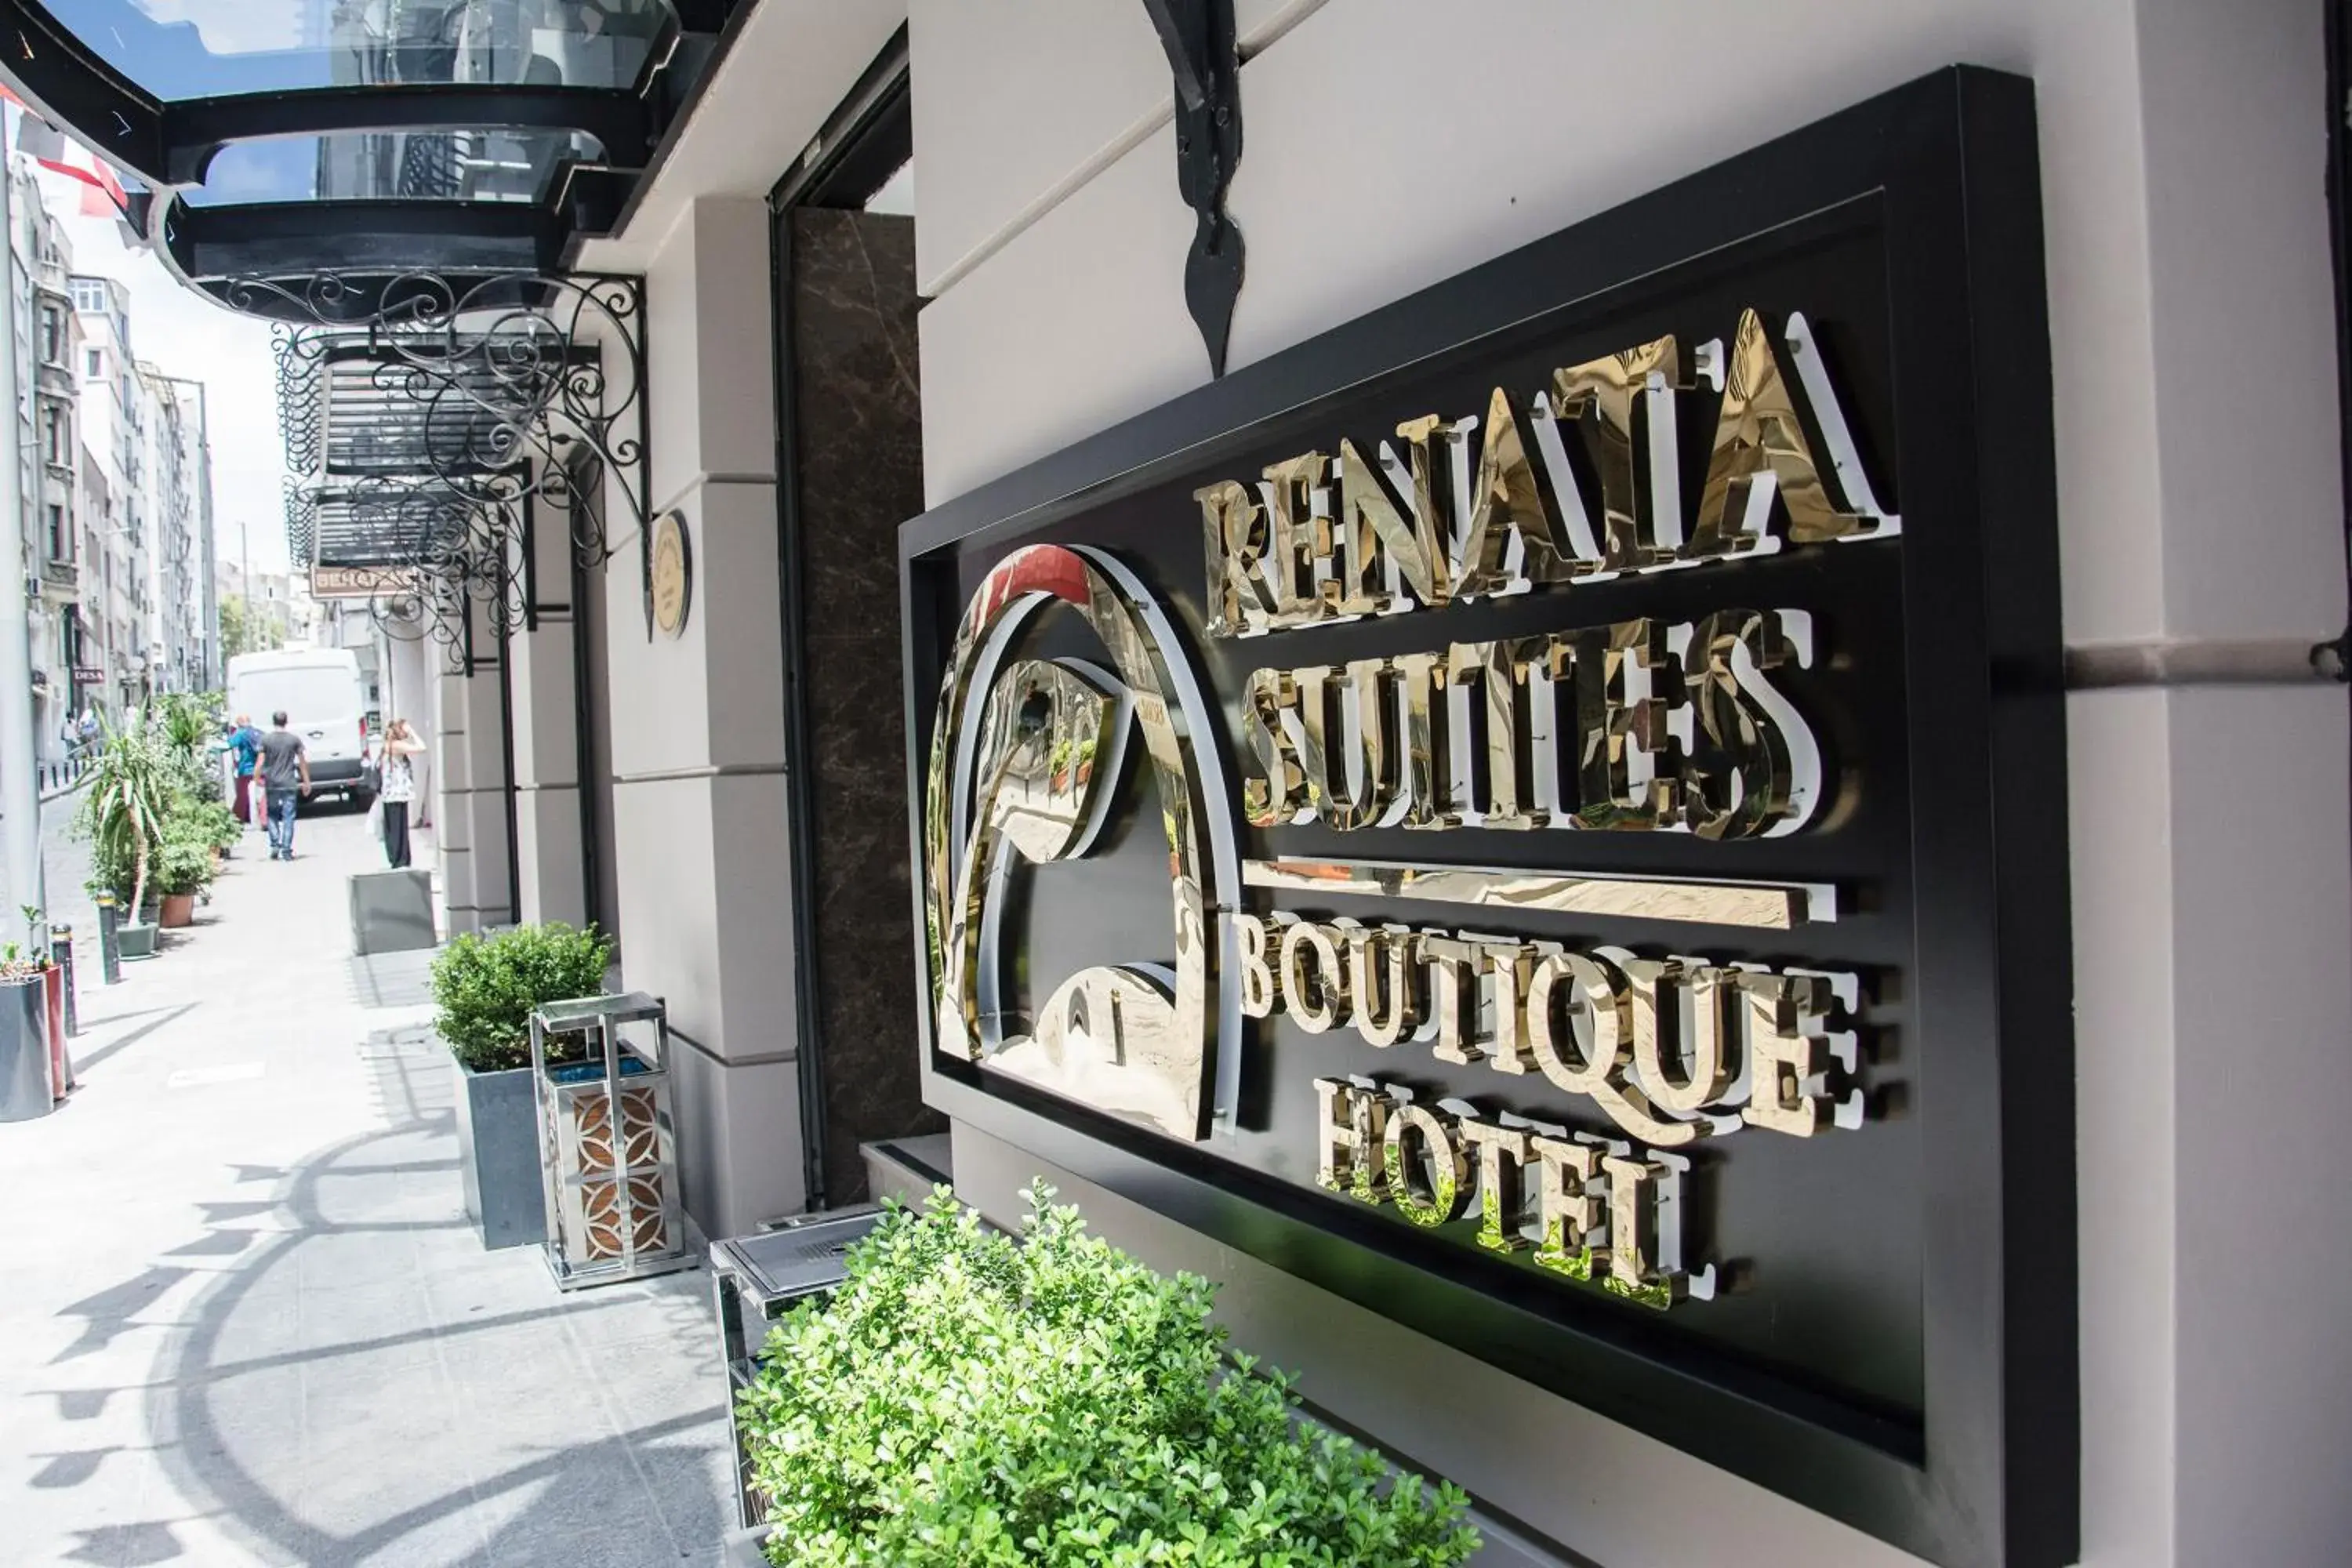 Property building, Facade/Entrance in Renata Suites Boutique Hotel